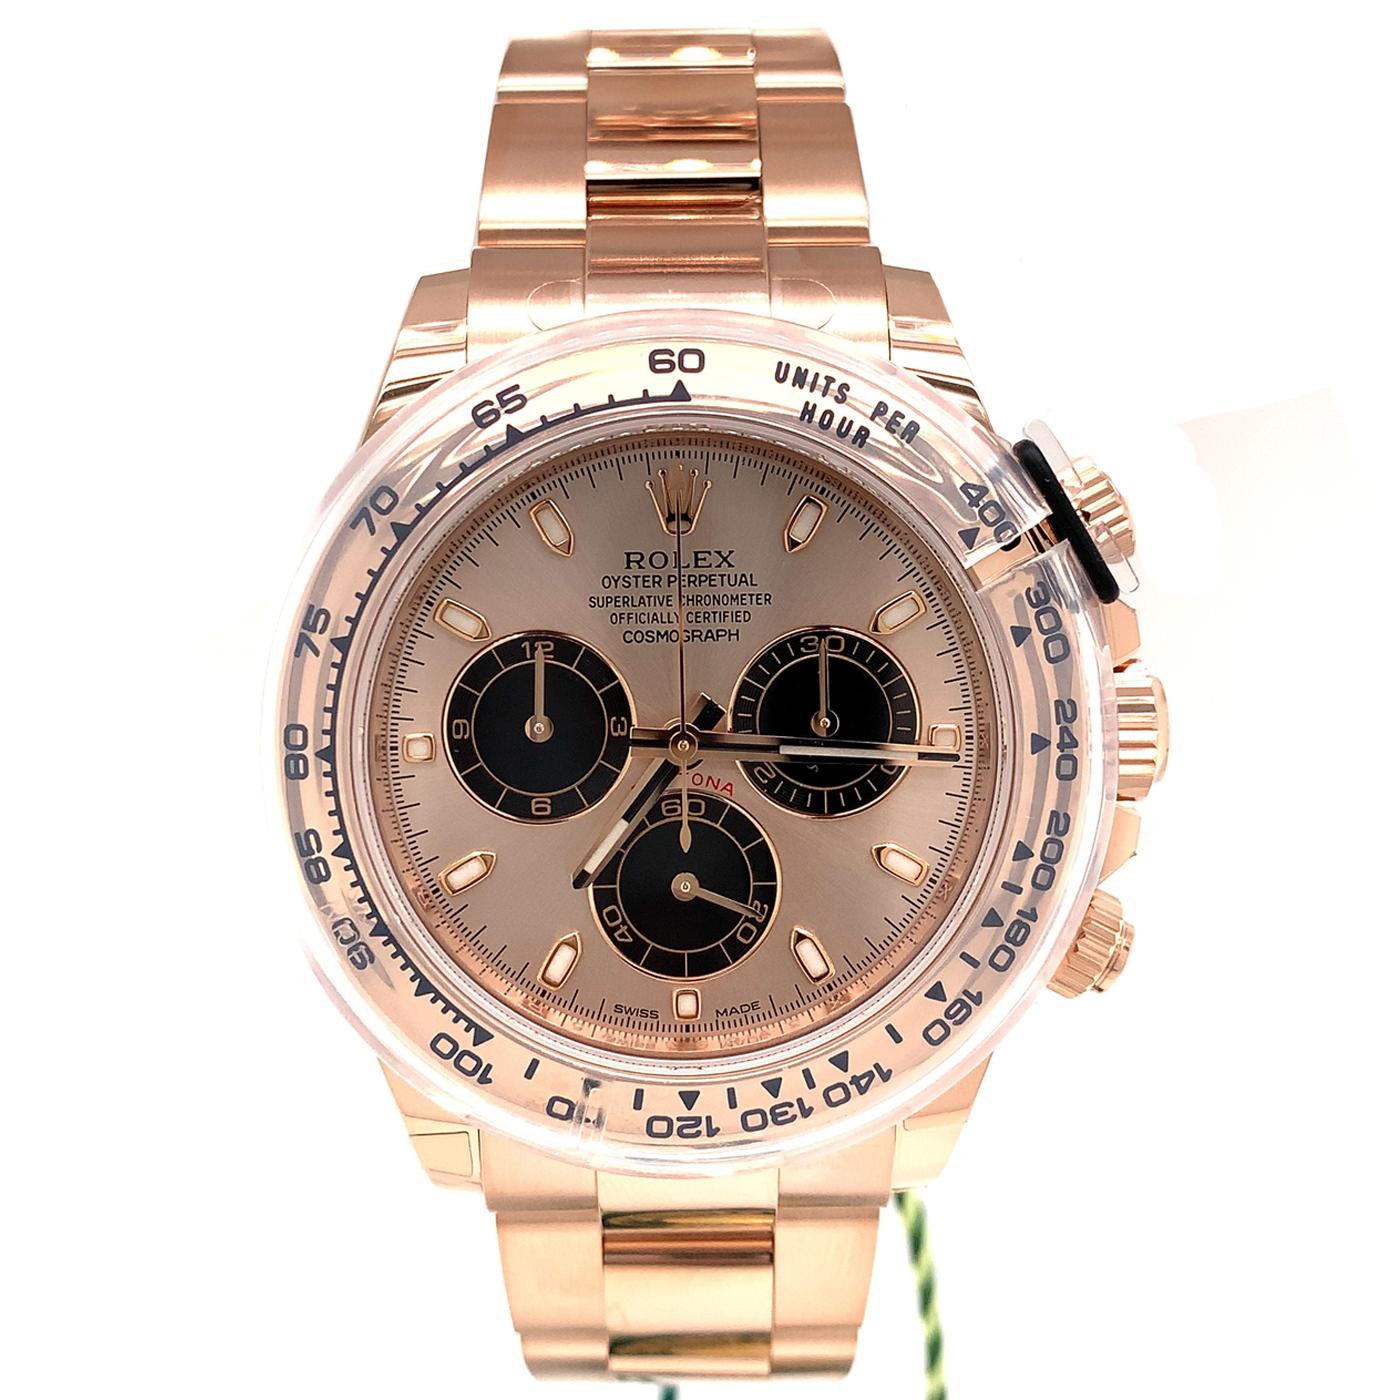 Cette montre Rolex Oyster Perpetual Cosmograph Daytona en or rose 18 carats, avec cadran en nacre blanche et diamants, et un bracelet Oyster présente une lunette en or rose 18 carats avec échelle tachymétrique gravée. Cette chronographe a été conçue